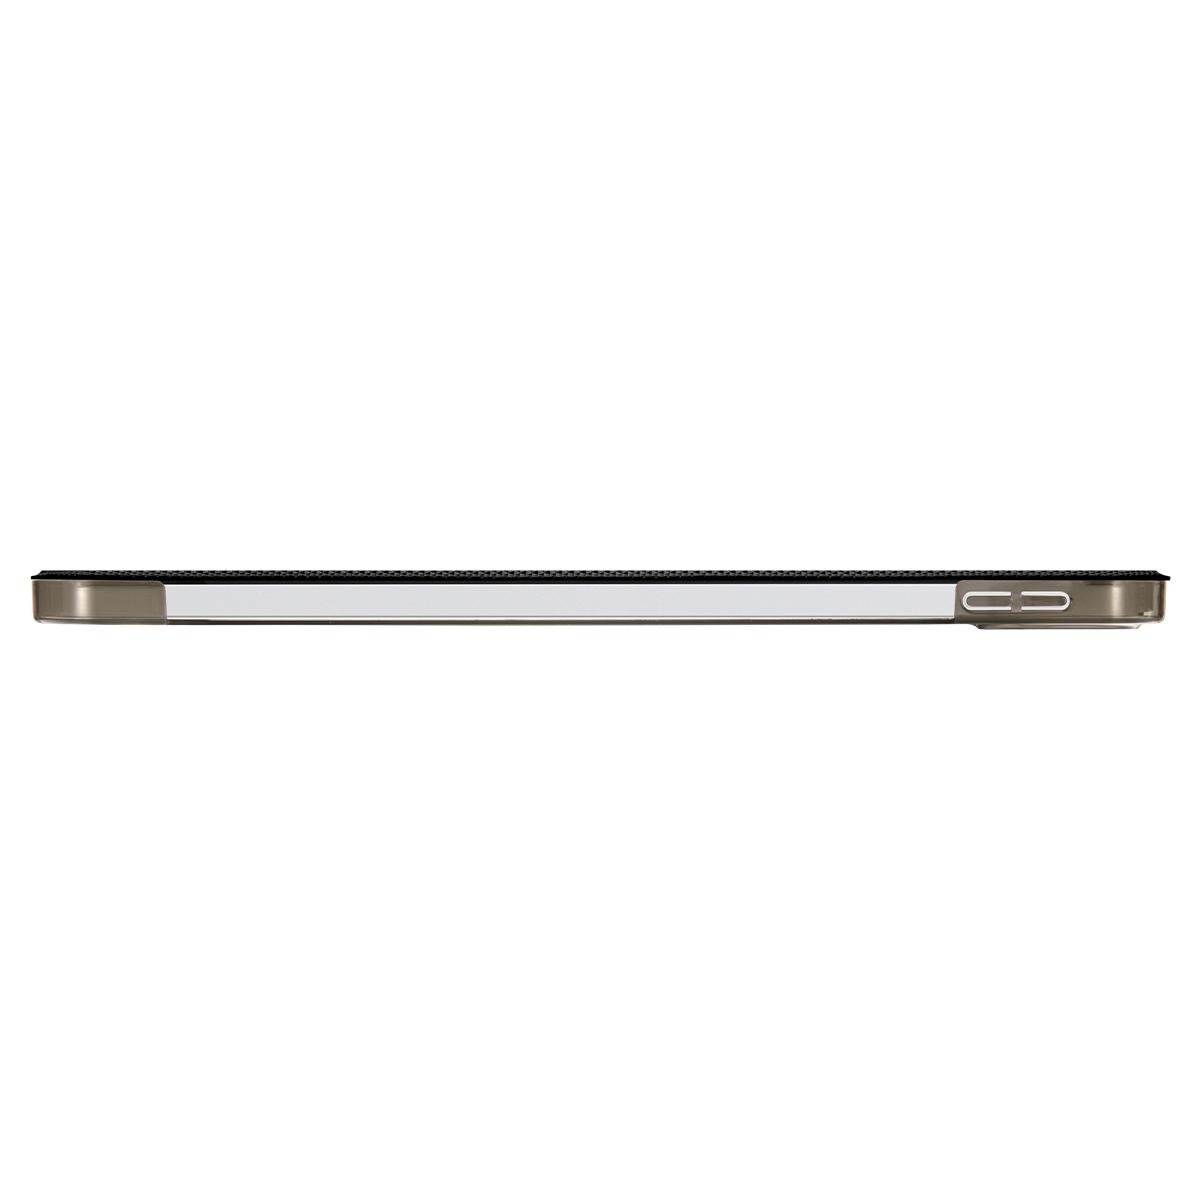 Ốp lưng Spigen Liquid Air Folio Black cho iPad Gen 10 10.9 - Thiết kế tỉ mỉ, chống sốc, gập đa năng - Hàng chính hãng